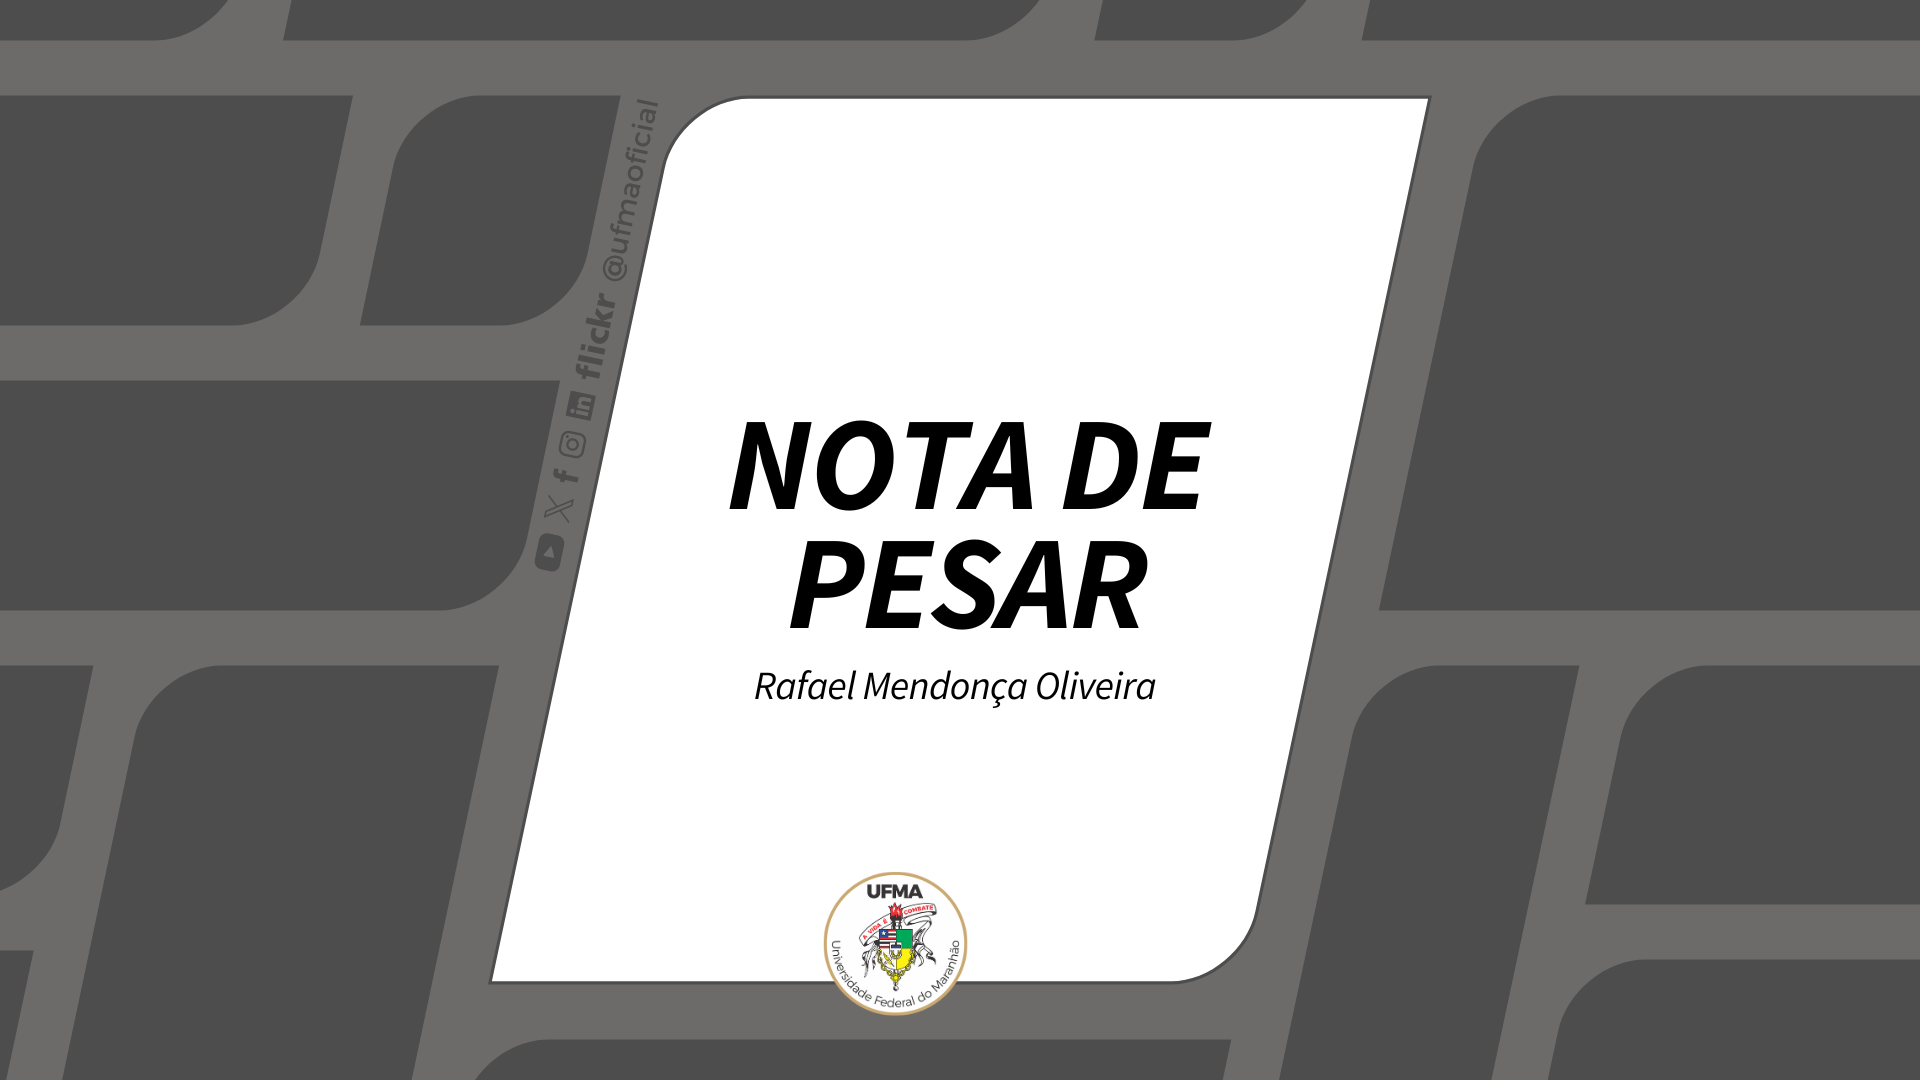 NOTA DE PESAR - Rafael Mendonça Oliveira